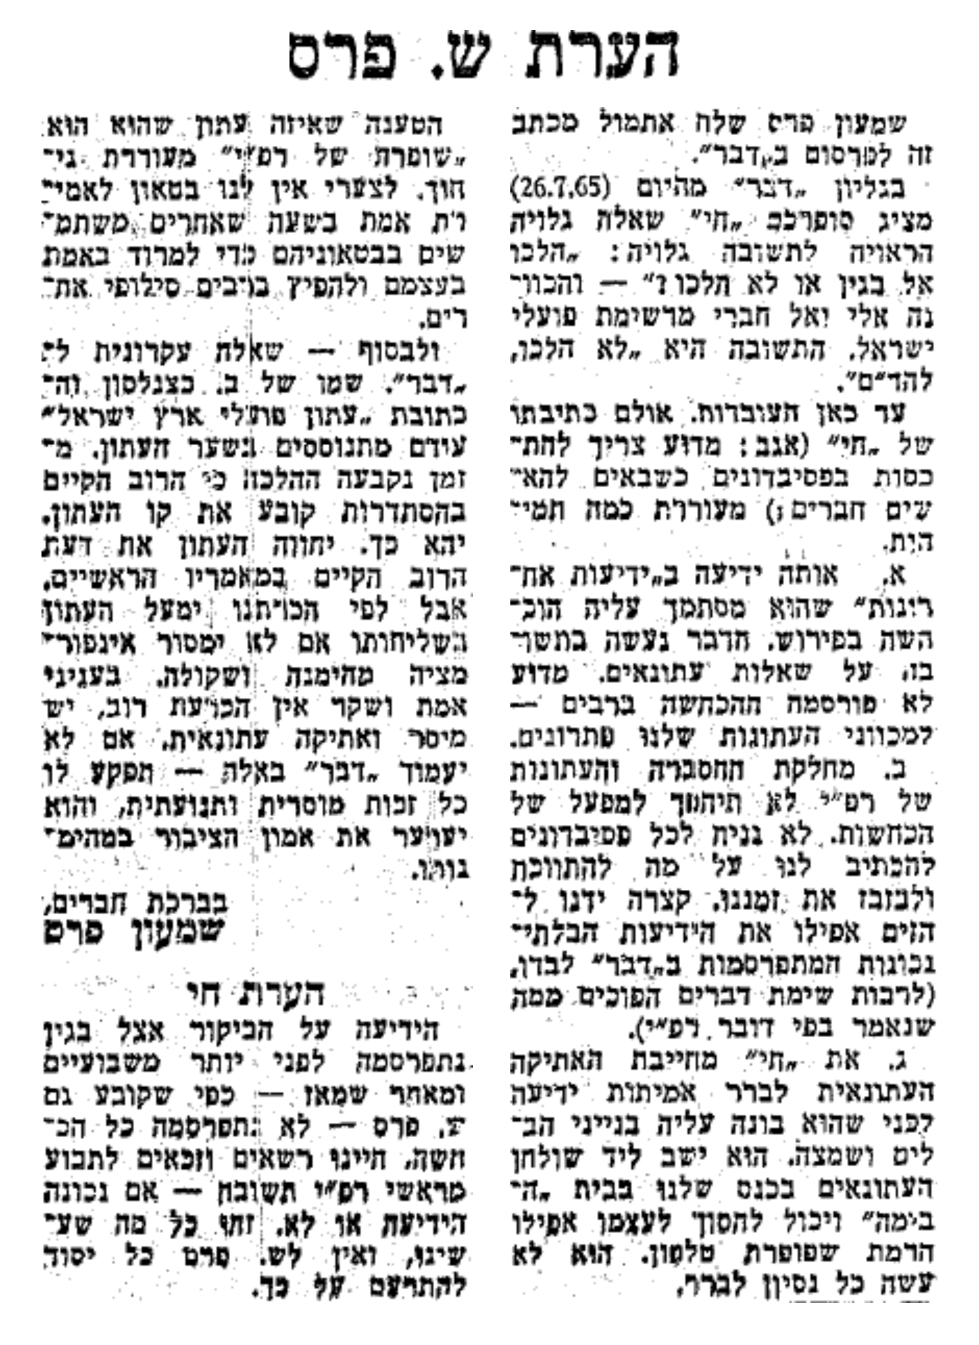 העיתון ימעל בשליחותו אם לא ימסור אינפורמציה מהימנה ושקולה. "דבר", 27.7.1965